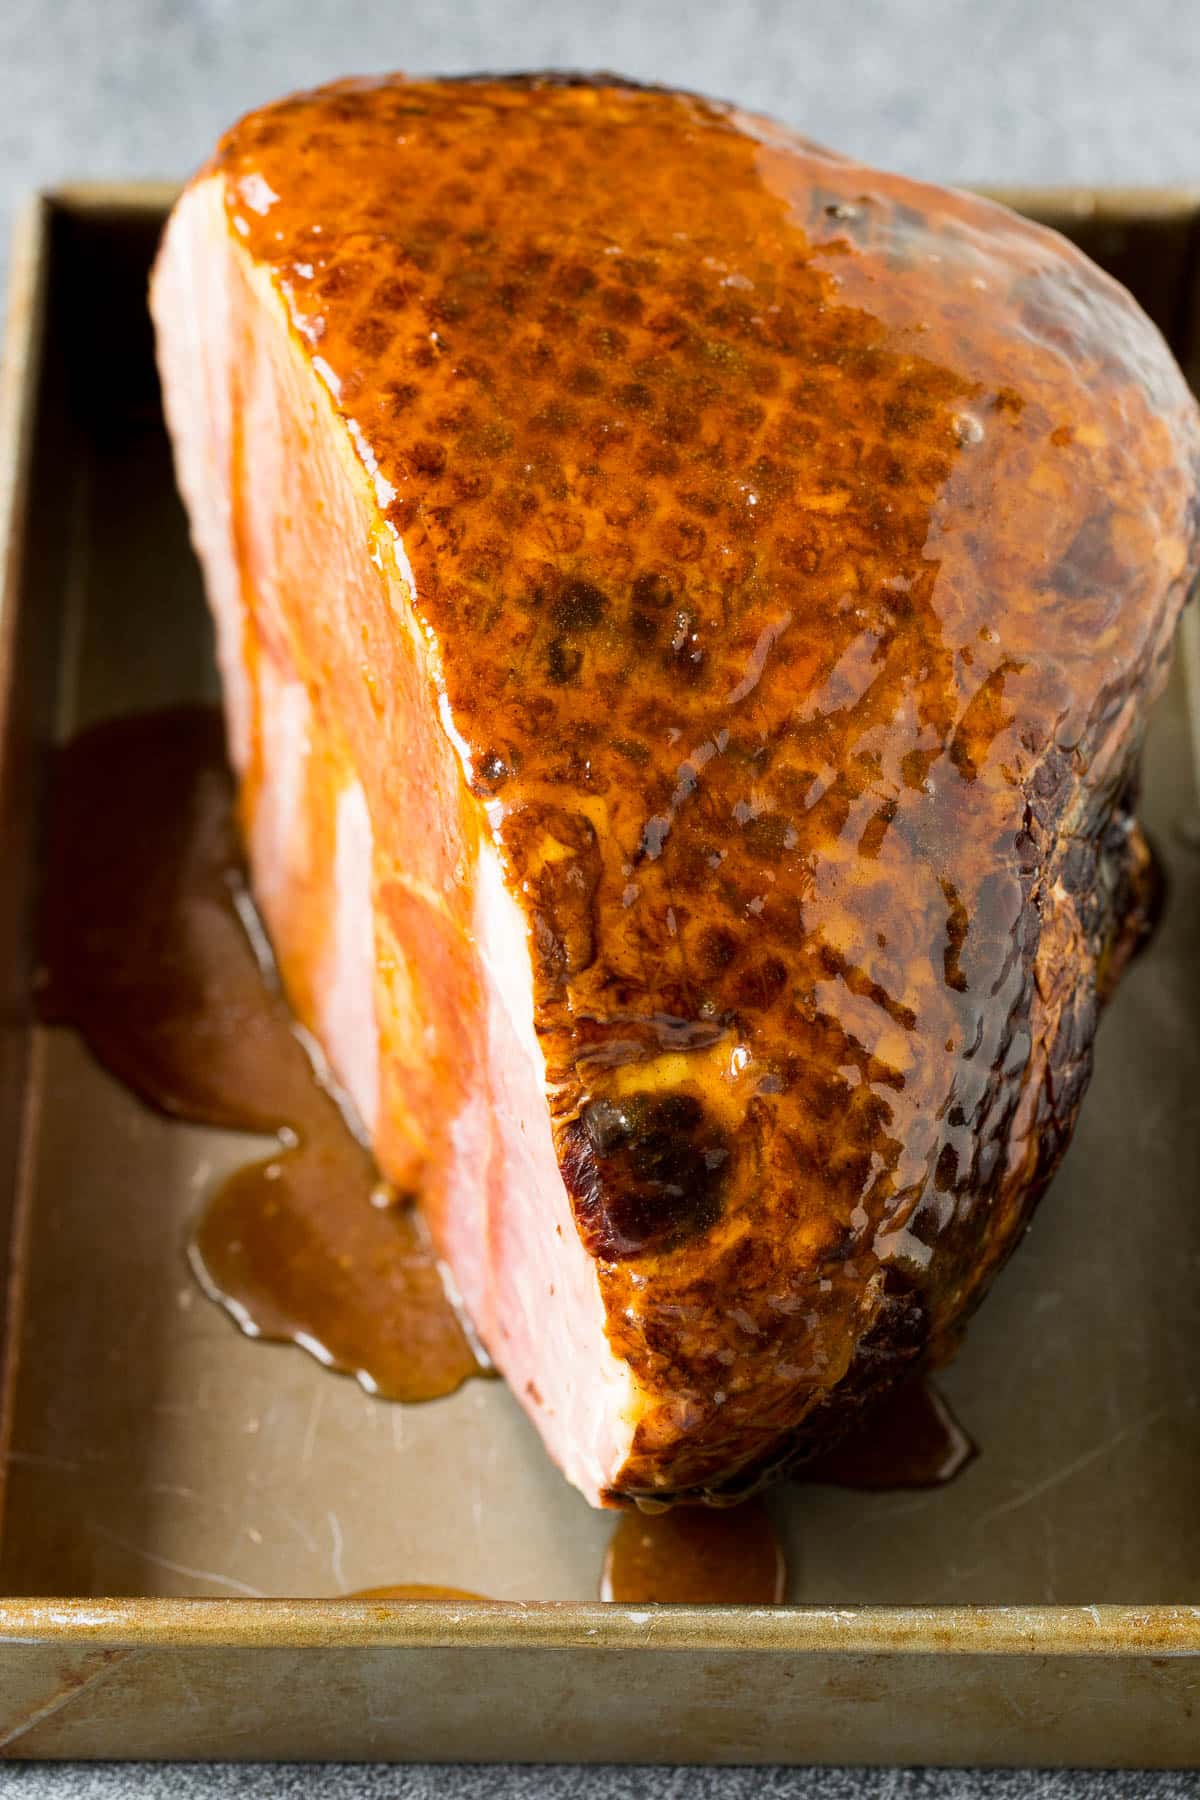 A ham coated in brown sugar glaze.